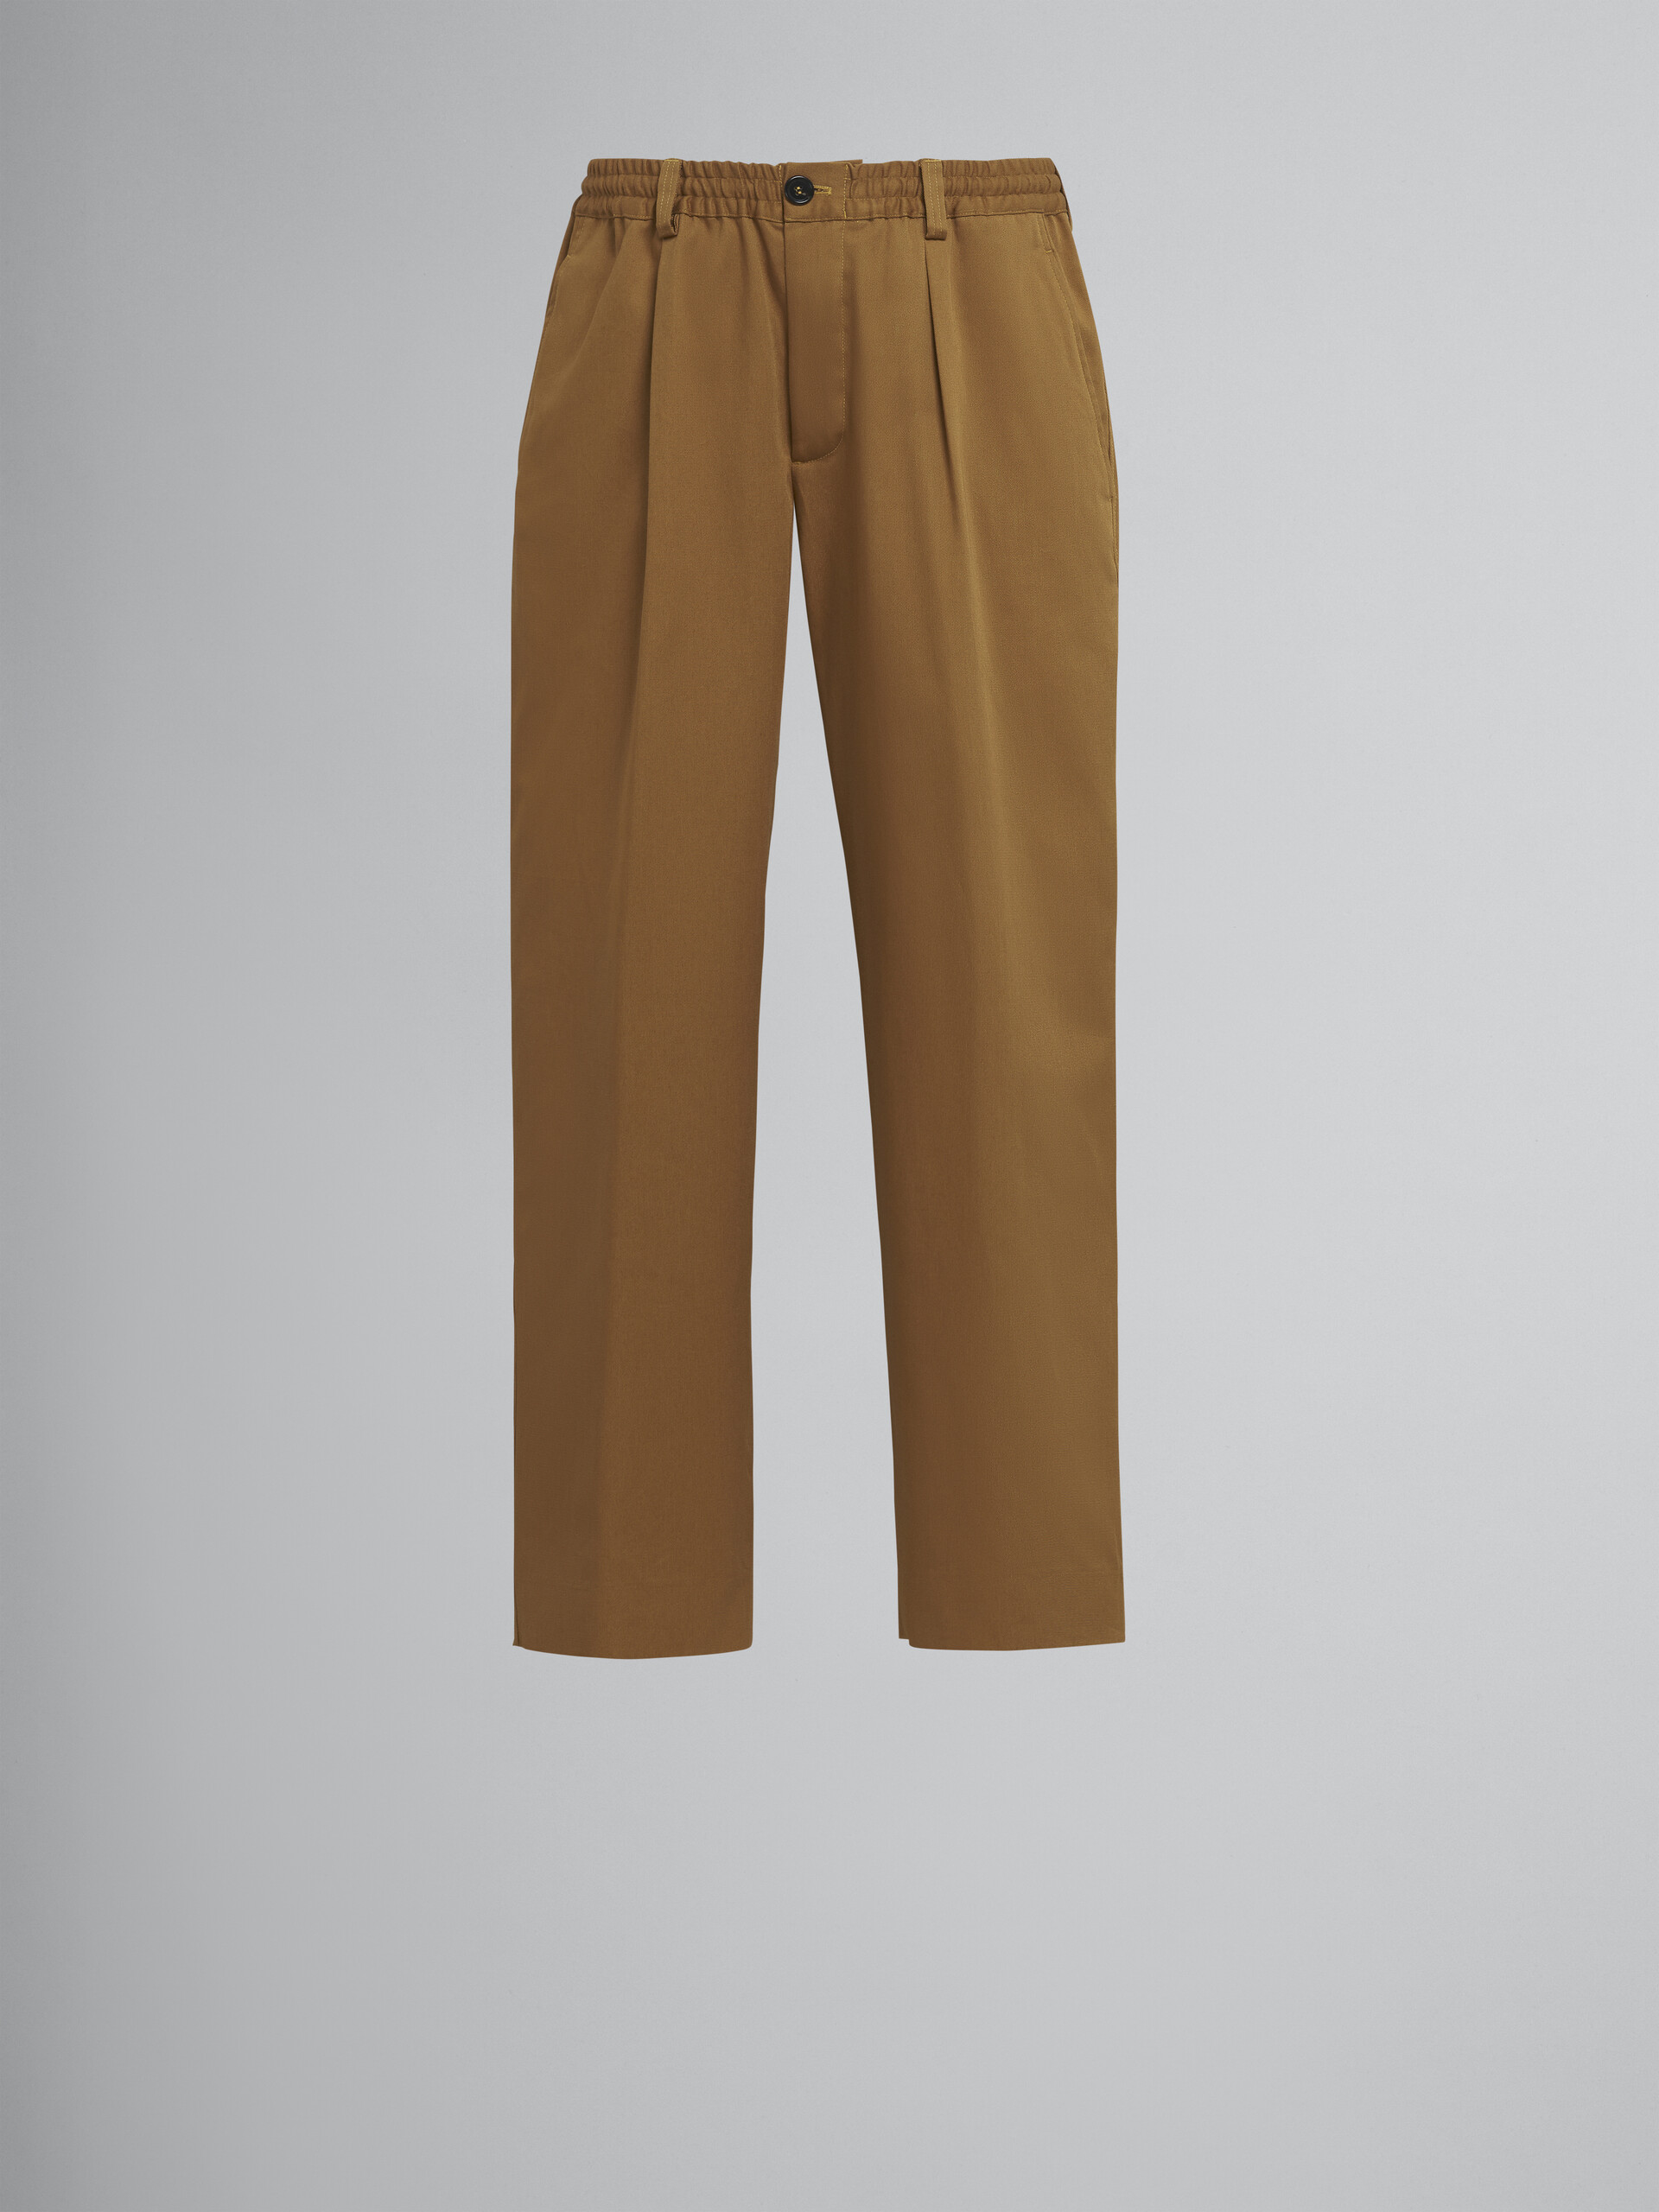 Pantaloni in gabardina di cotone marroni - Pantaloni - Image 1